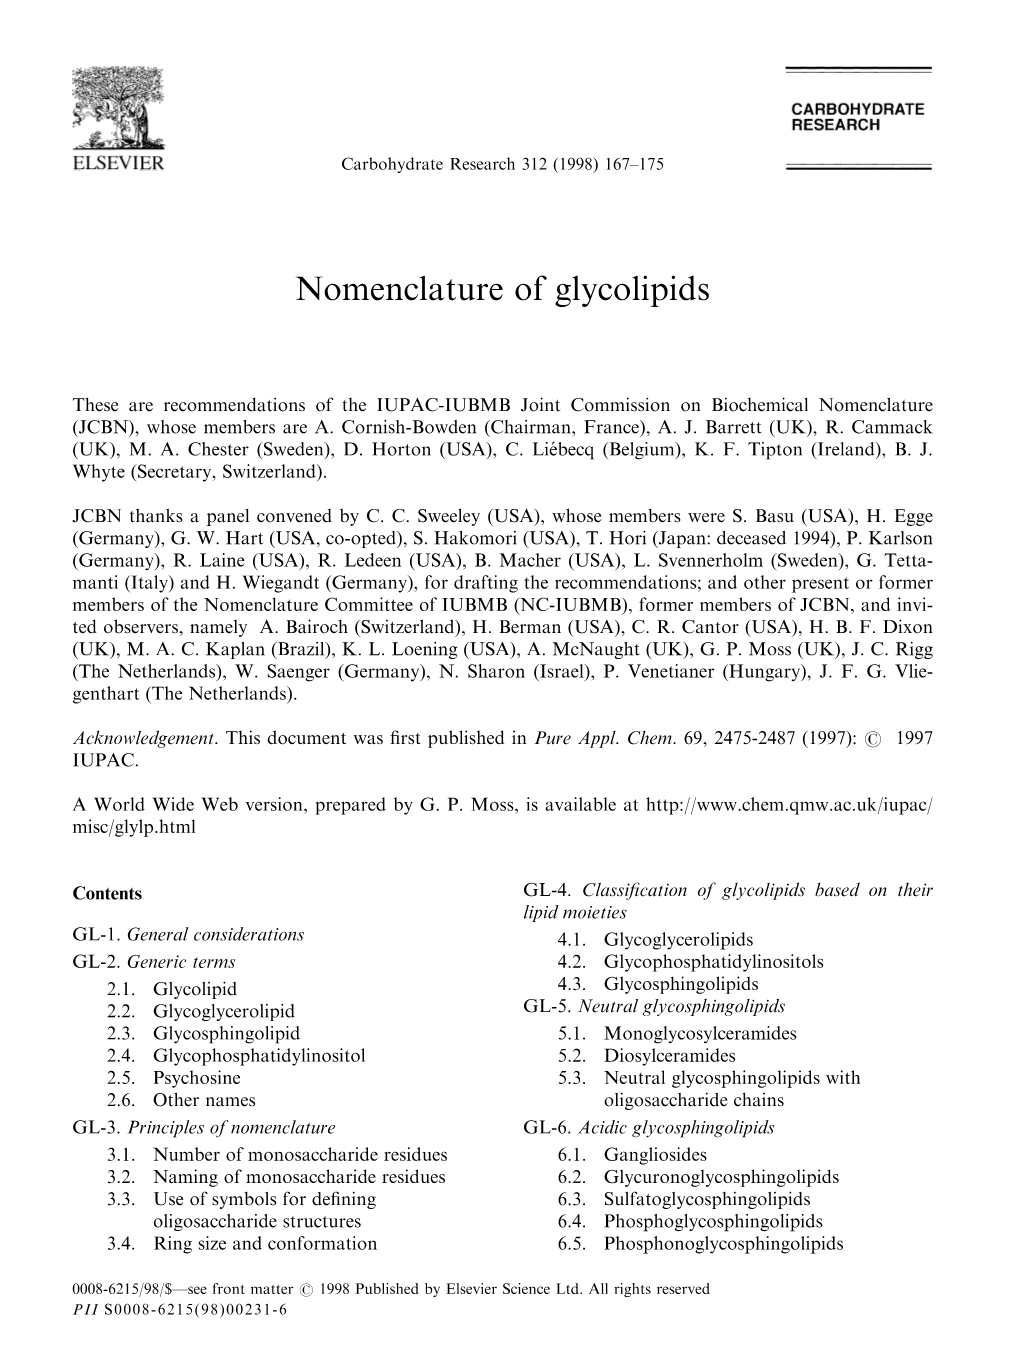 Nomenclature of Glycolipids